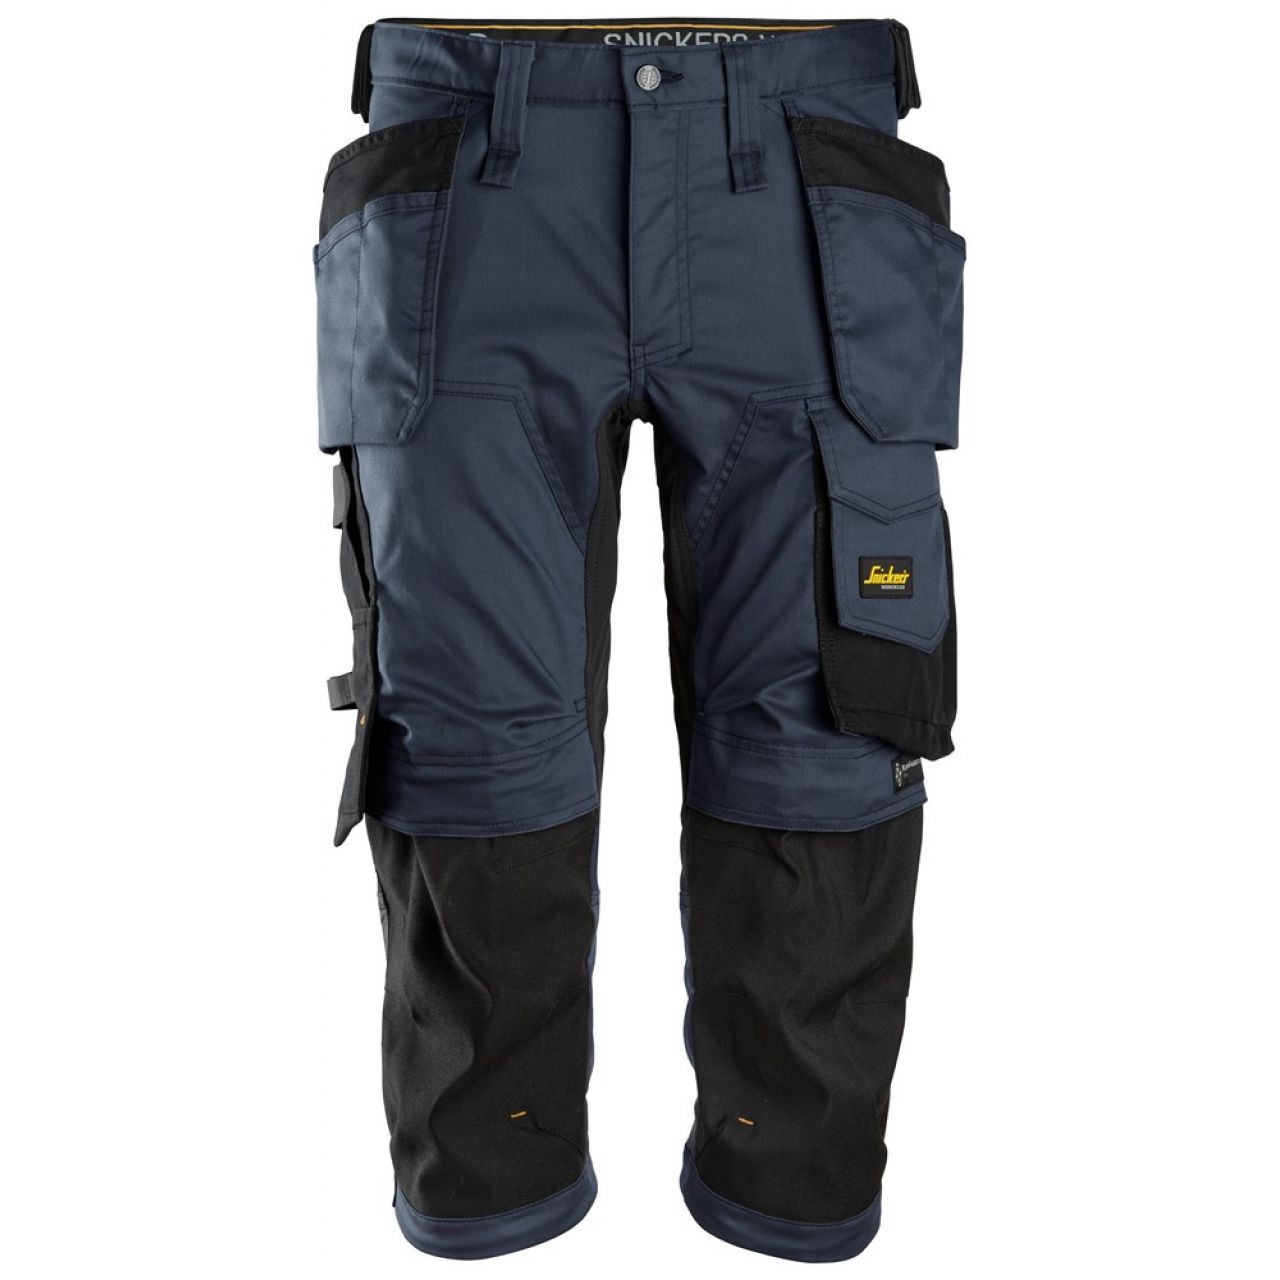 6142 Pantalones pirata de trabajo elasticos con bolsillos flotantes AllroundWork azul marino-negro talla 56